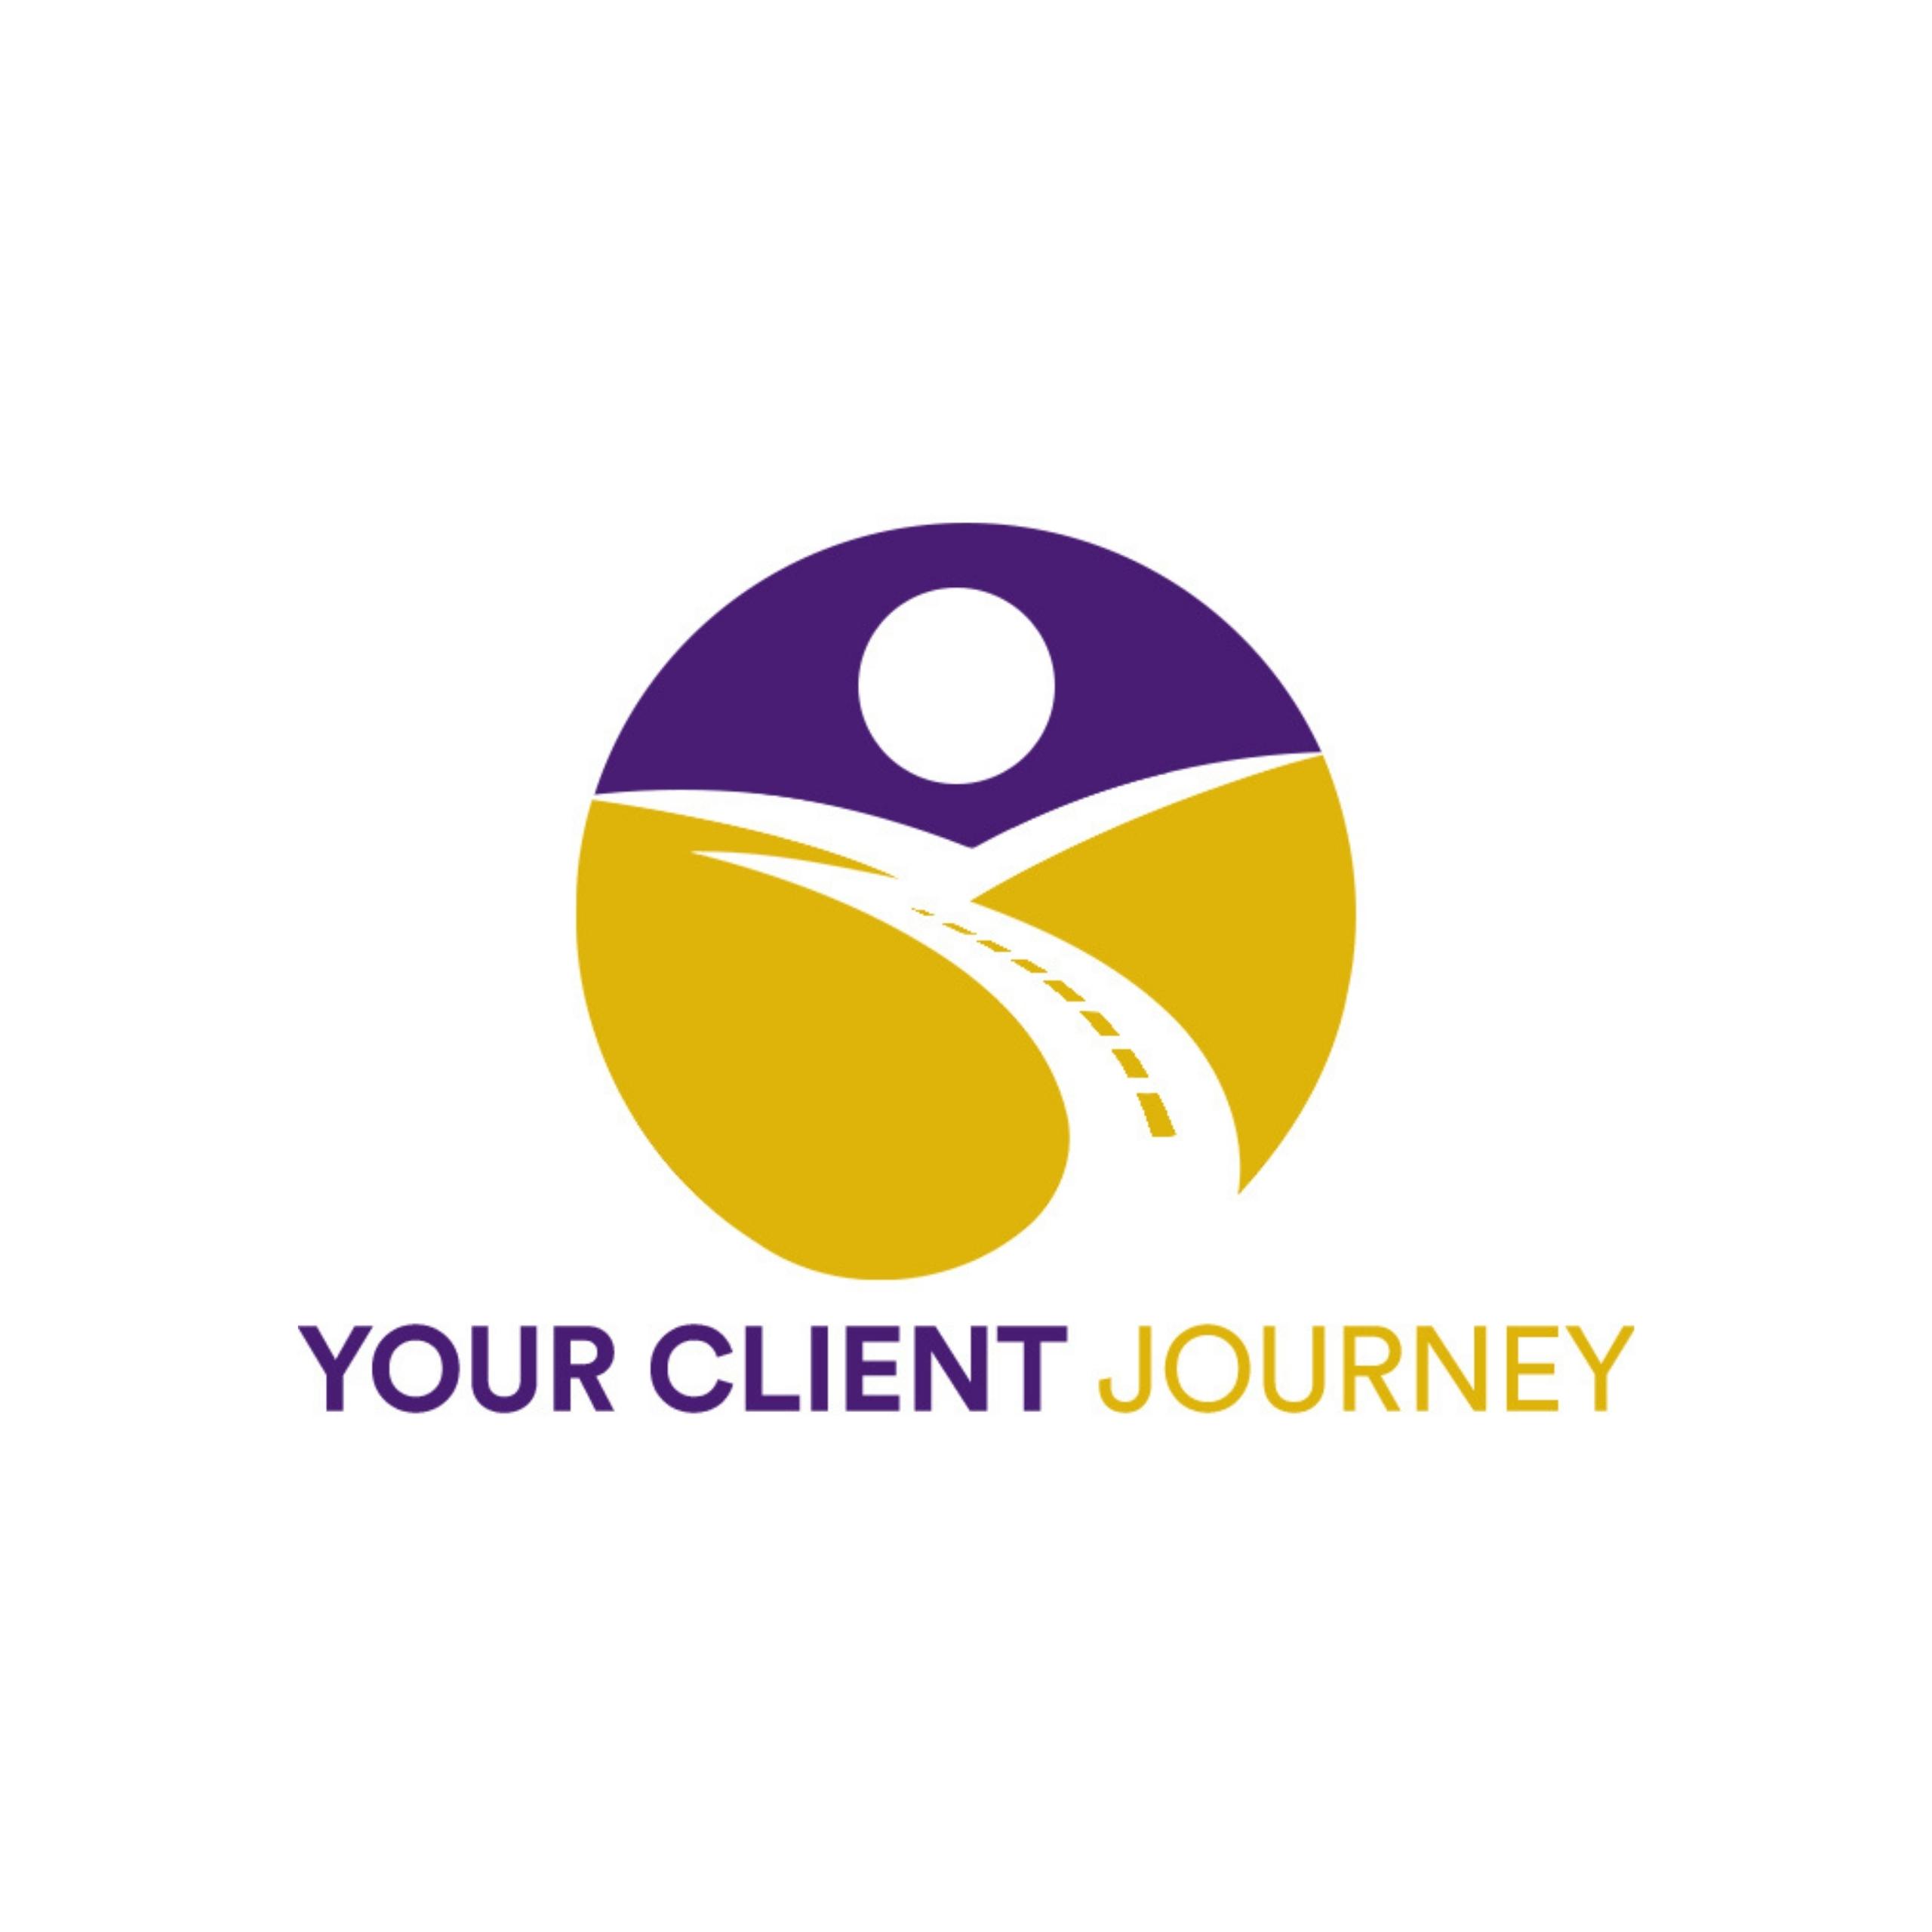 Your Client Journey